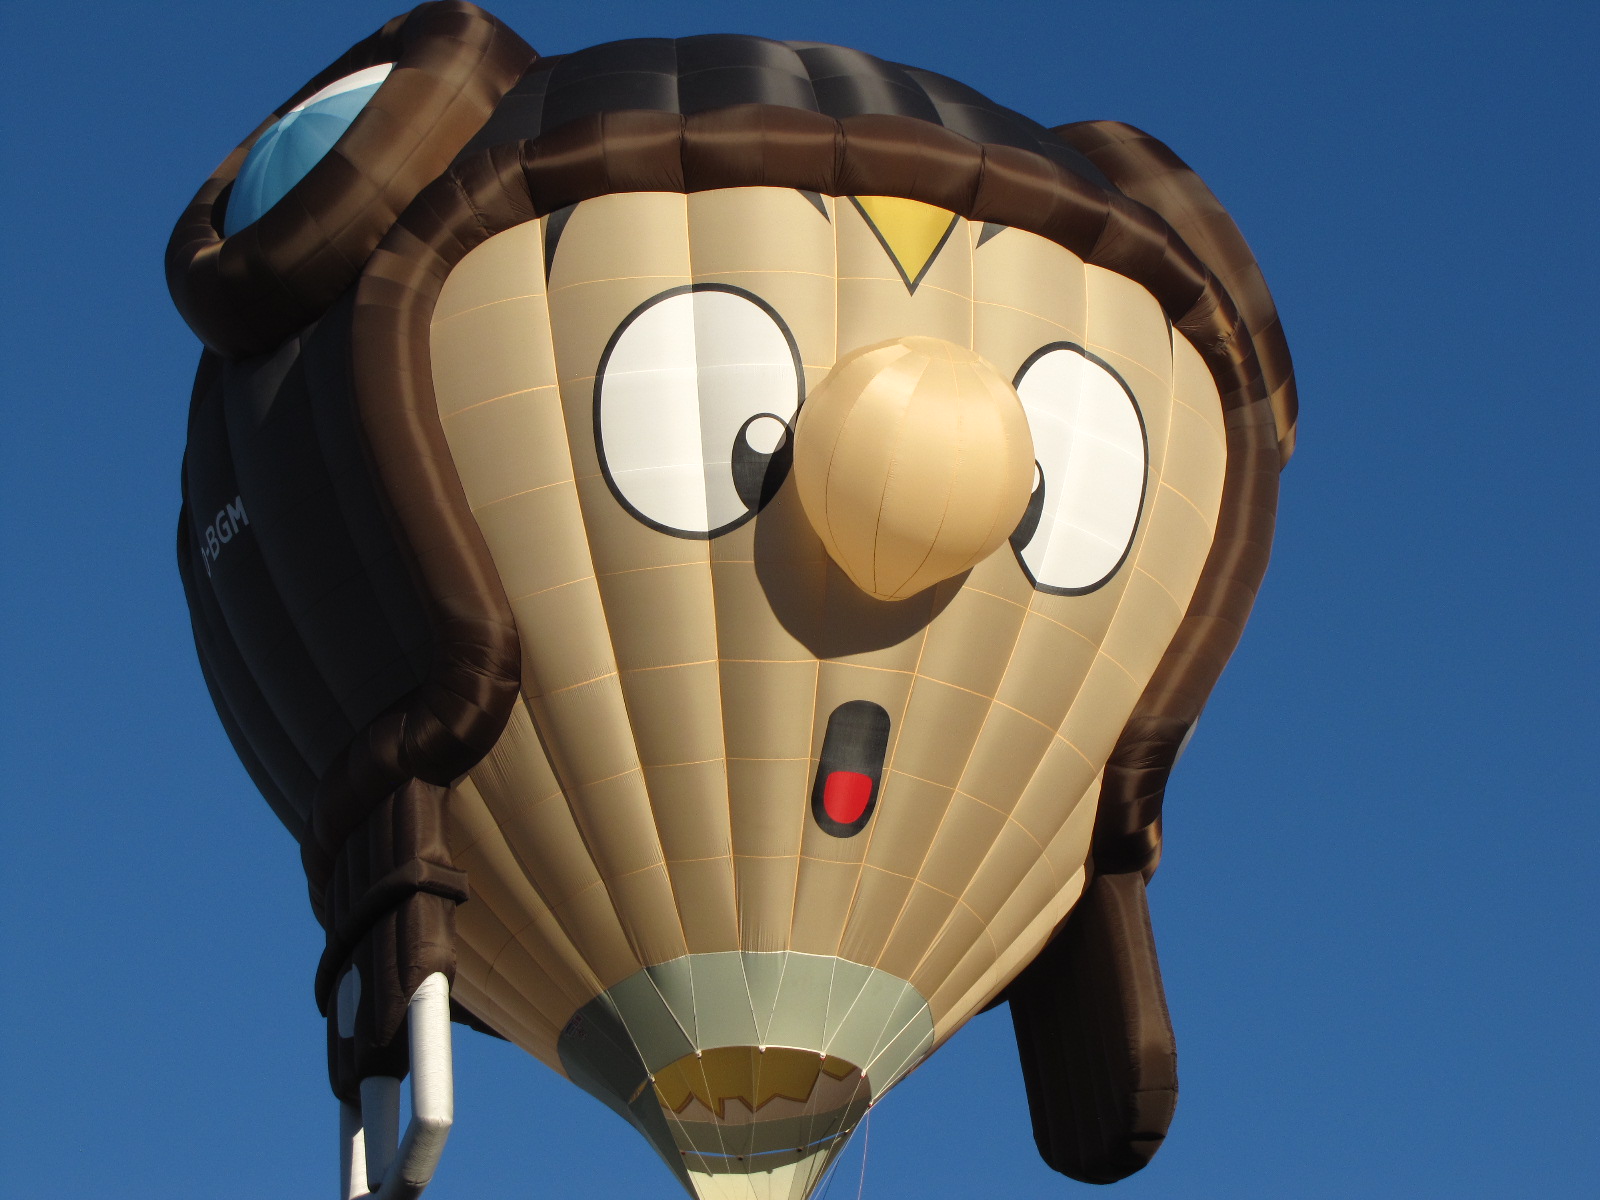 Balloon+Fiesta+Brings+the+World+to+Albuquerque